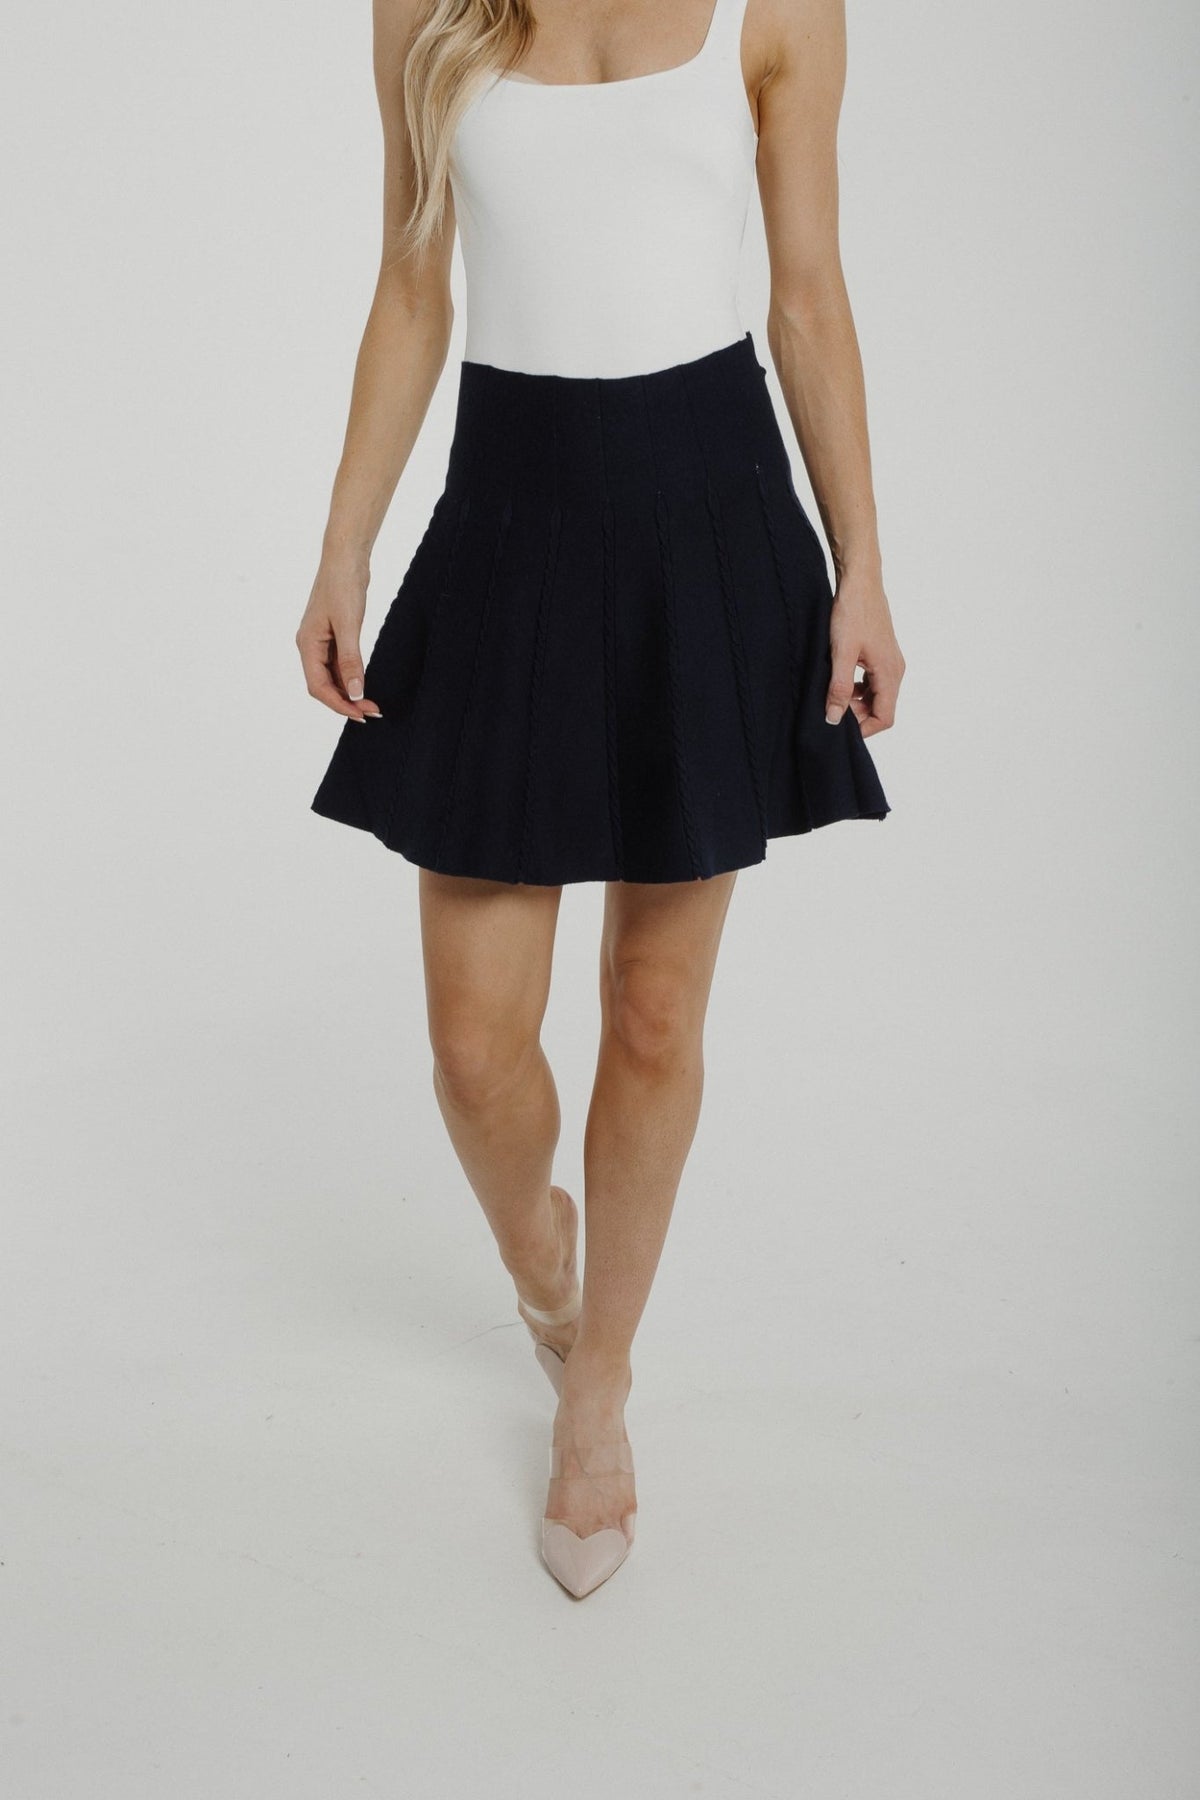 Becca Knit Mini Skirt In Navy - The Walk in Wardrobe